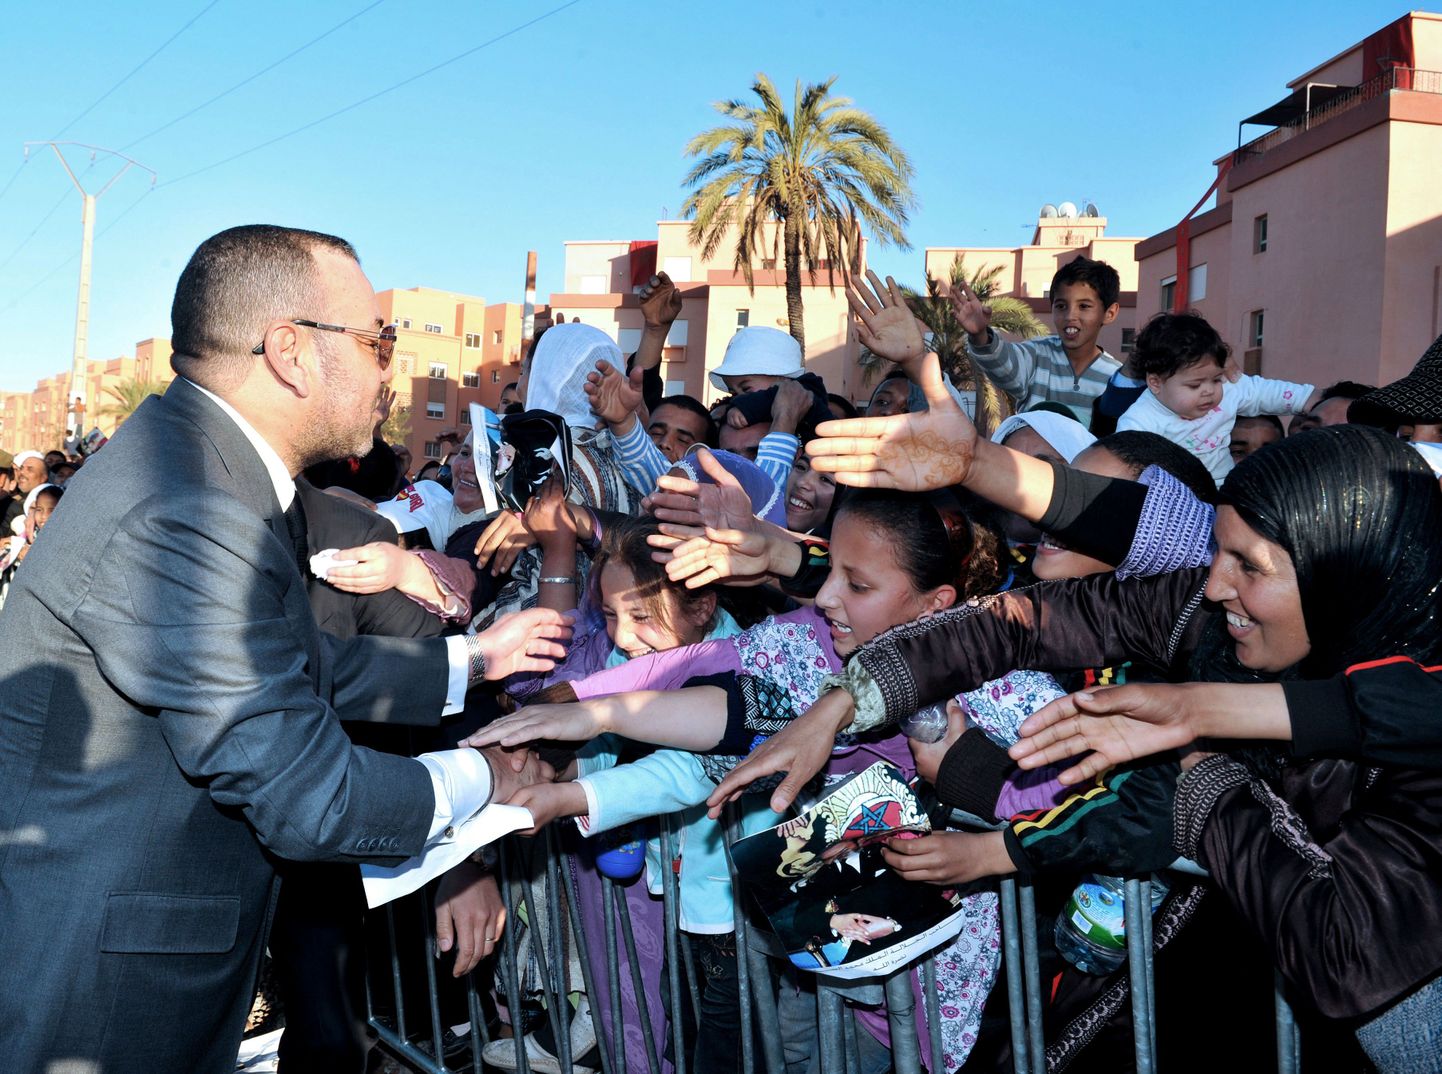 Maroko kuningas Mohammed VI rahvahuöka tervitamas.